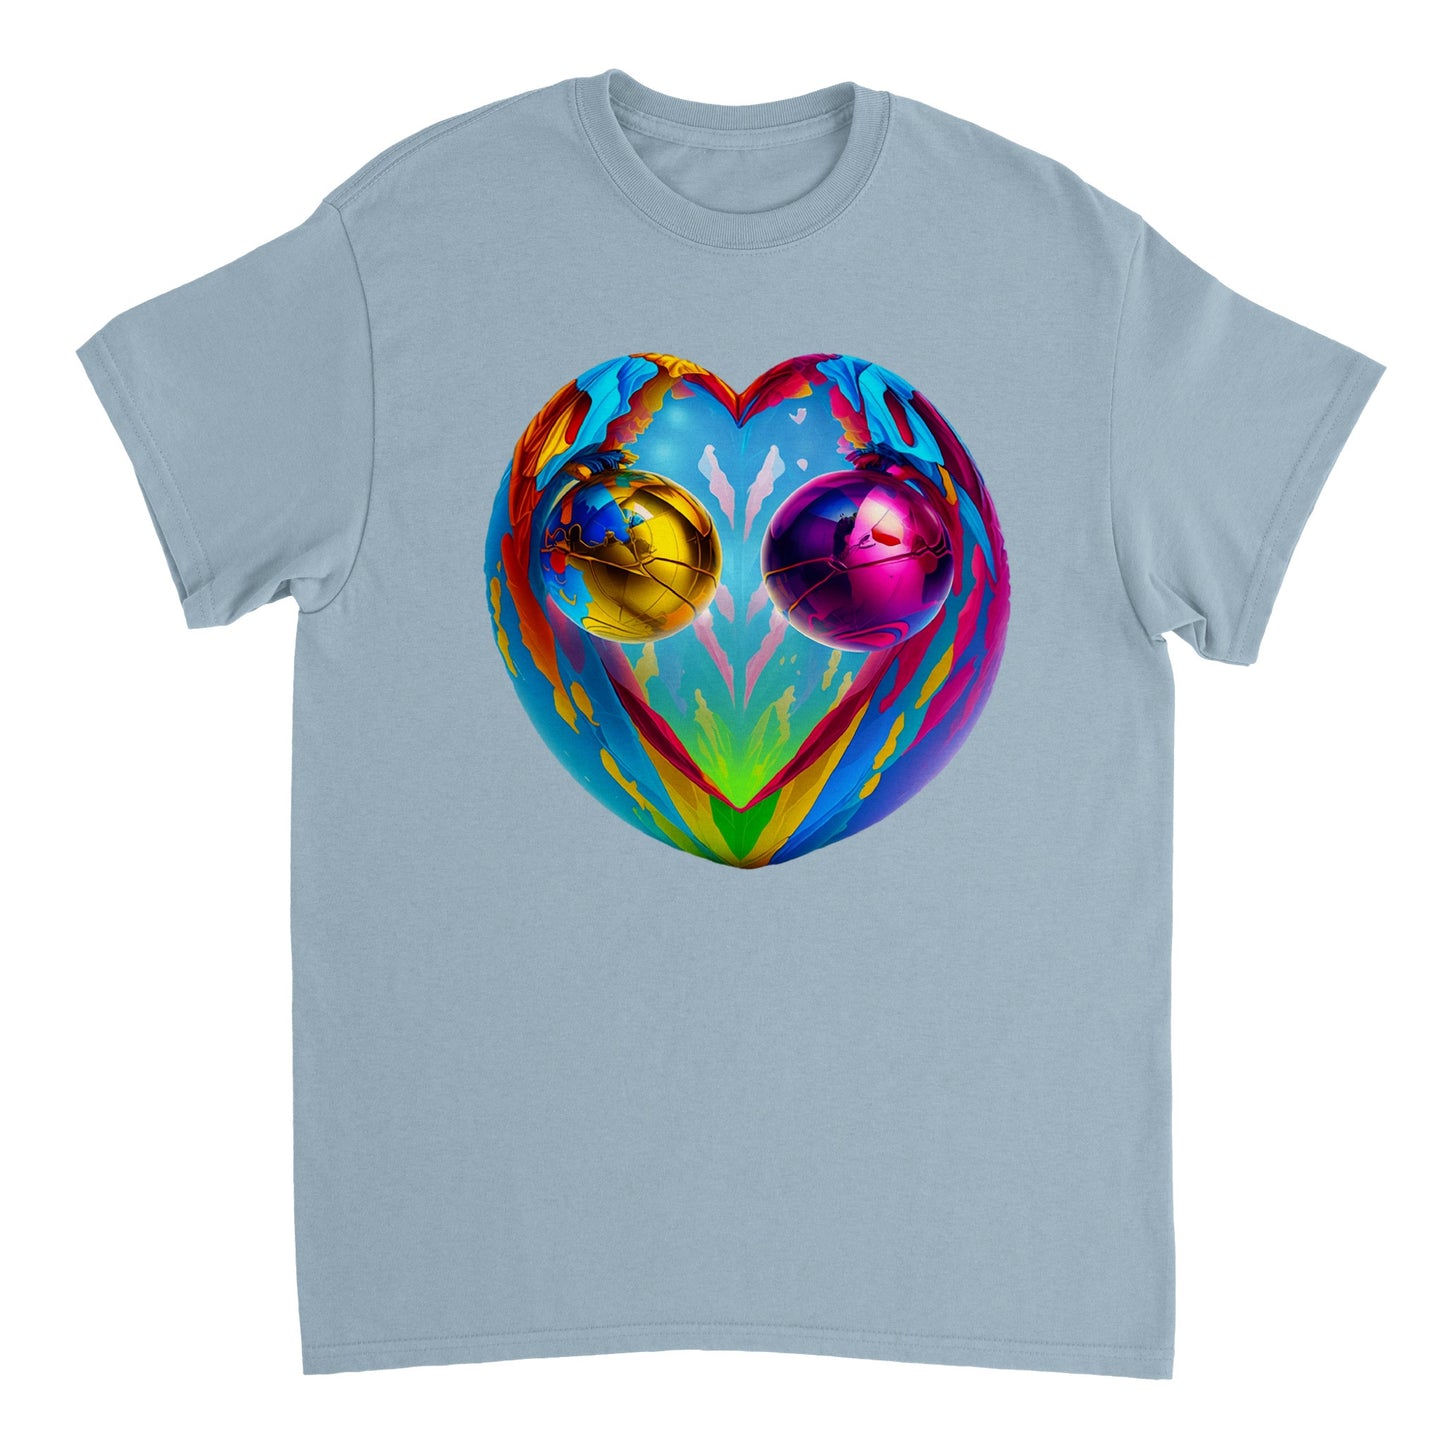 Love Heart - Heavyweight Unisex Crewneck T-shirt 67